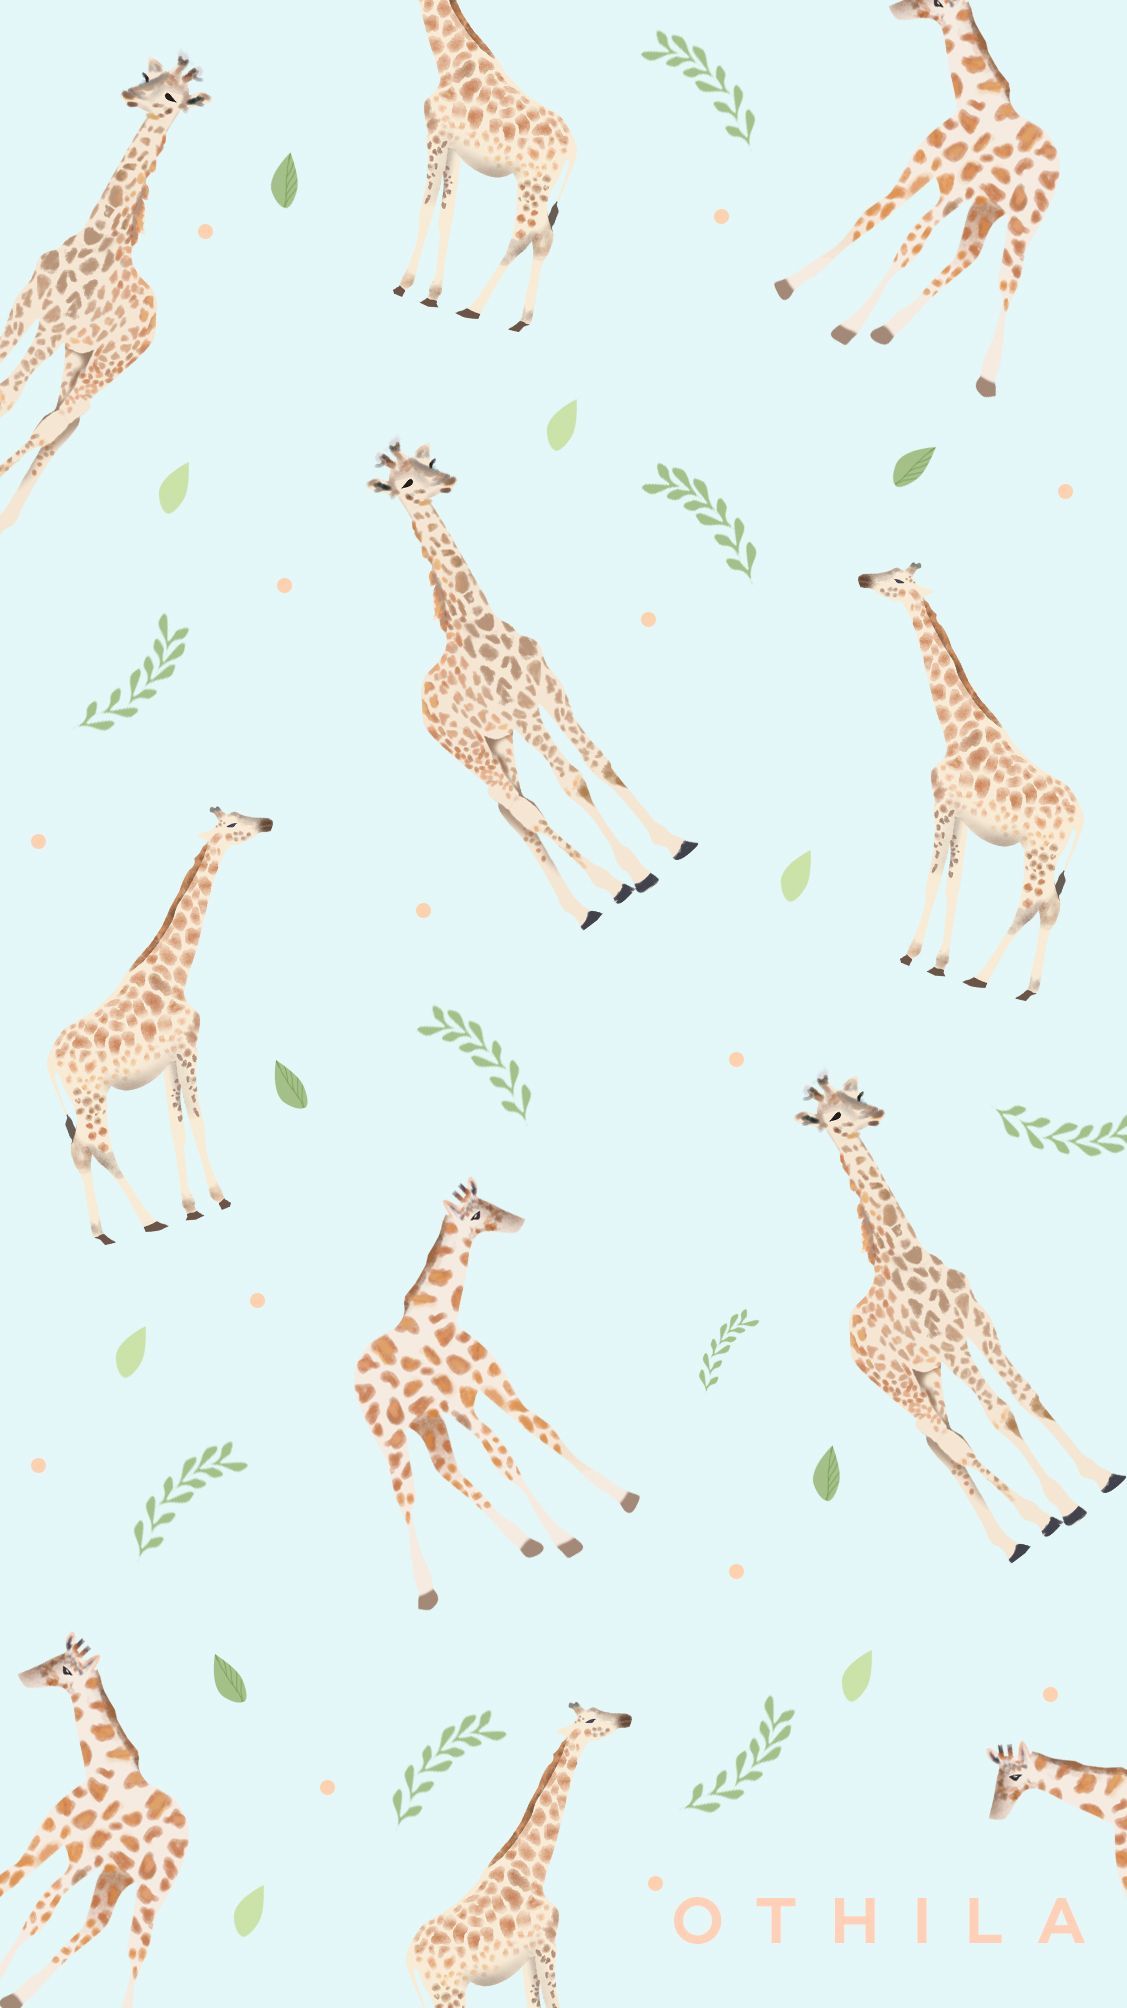 giraffe #animals #flowers #nature #blue #wallpaper #design. Phone wallpaper patterns, Graphic wallpaper, Apple watch wallpaper